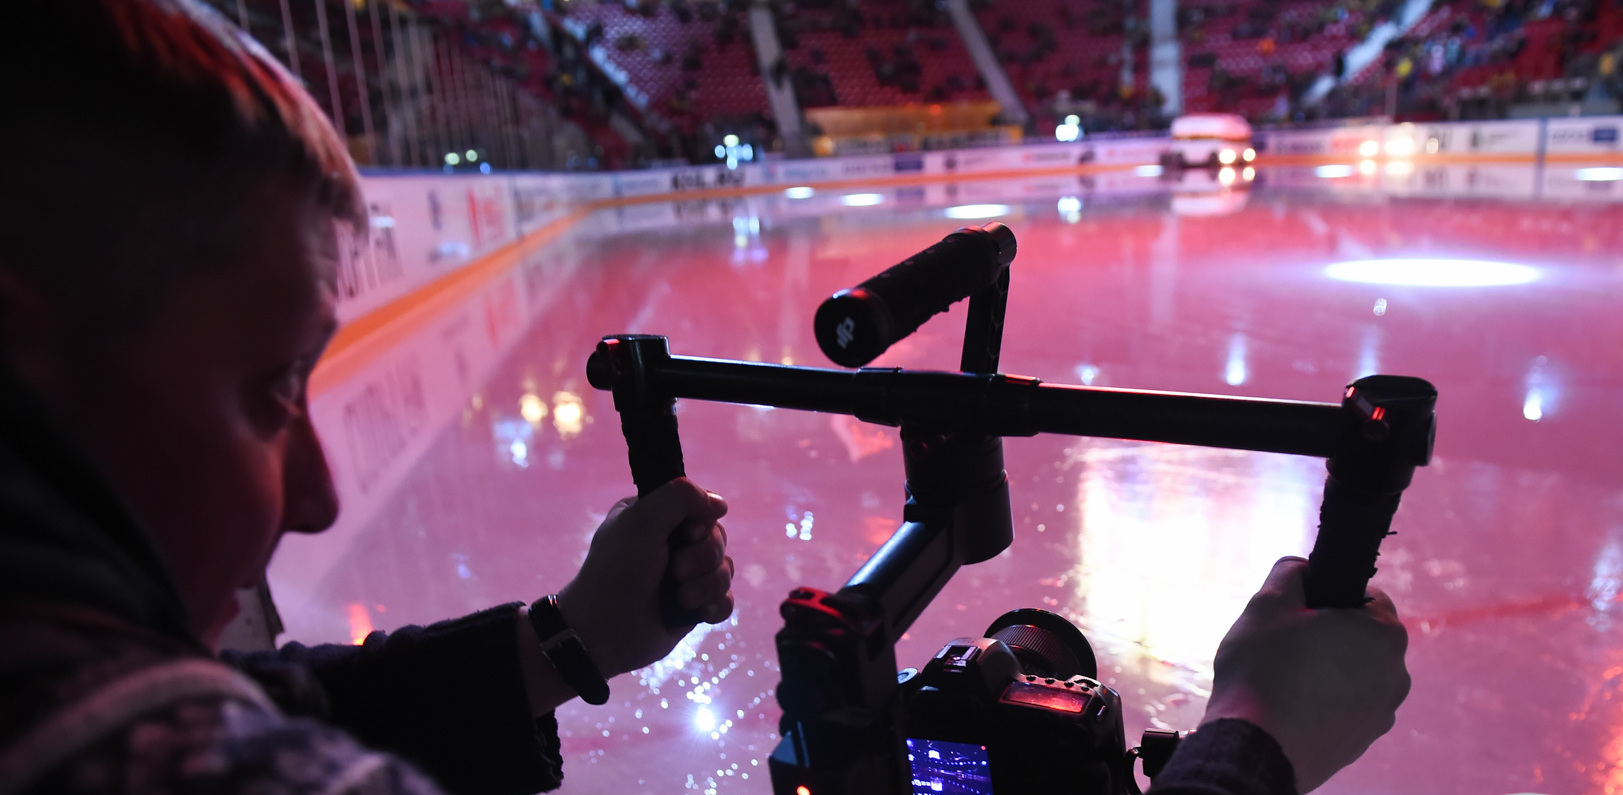 Телеканал домашний трансляция эфира. Камера для трансляции спортивных матчей панорамная.